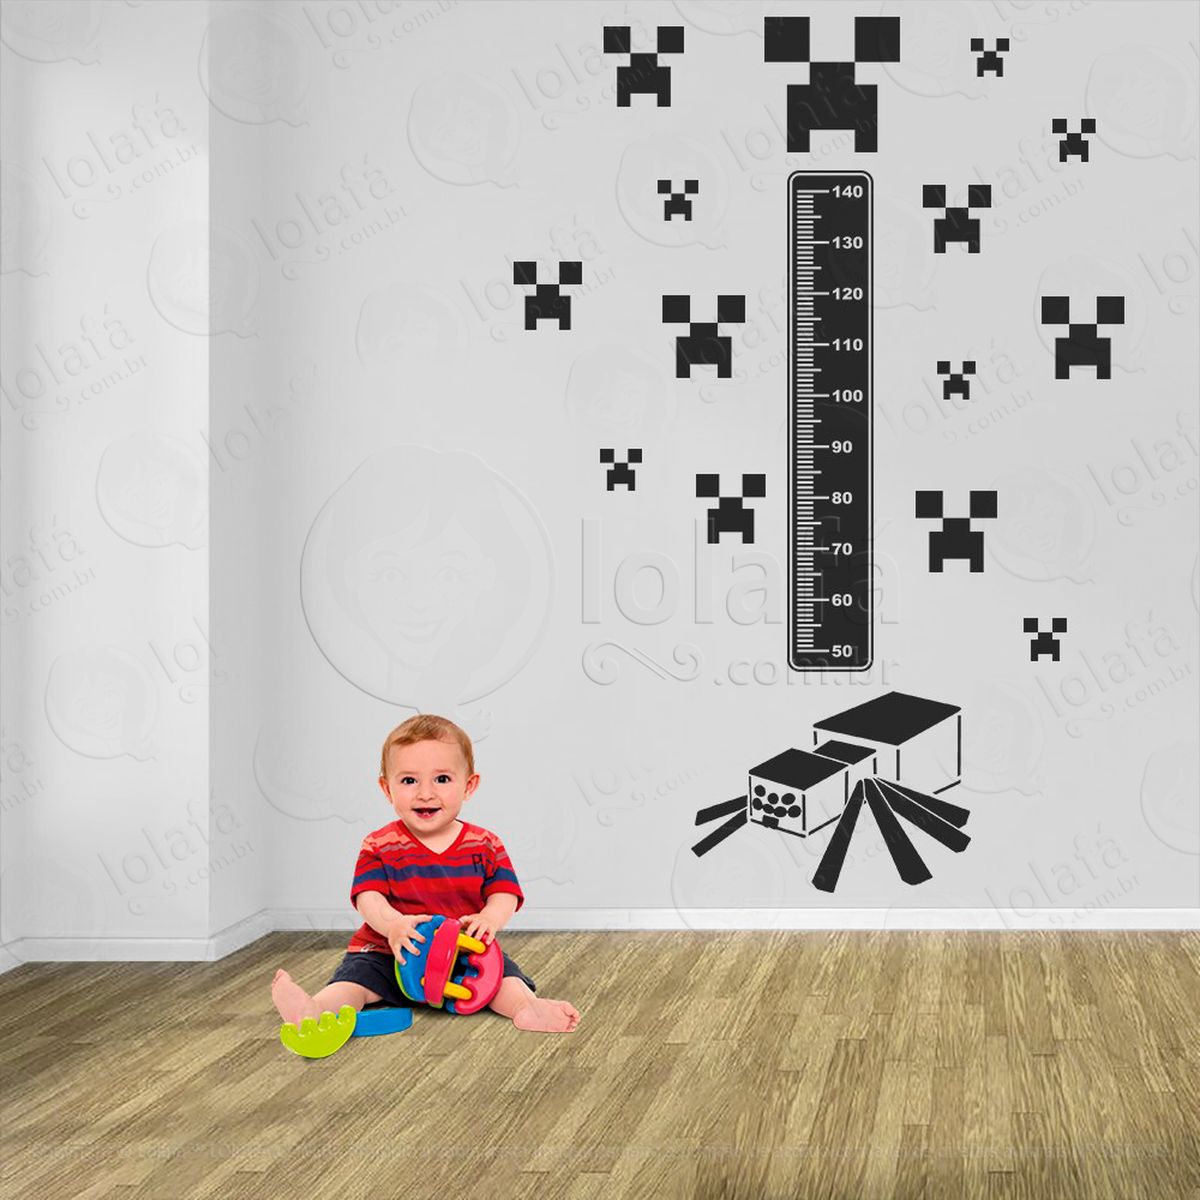 minecraft e minecraft adesivo régua de crescimento infantil, medidor de altura para quarto, porta e parede - mod:737